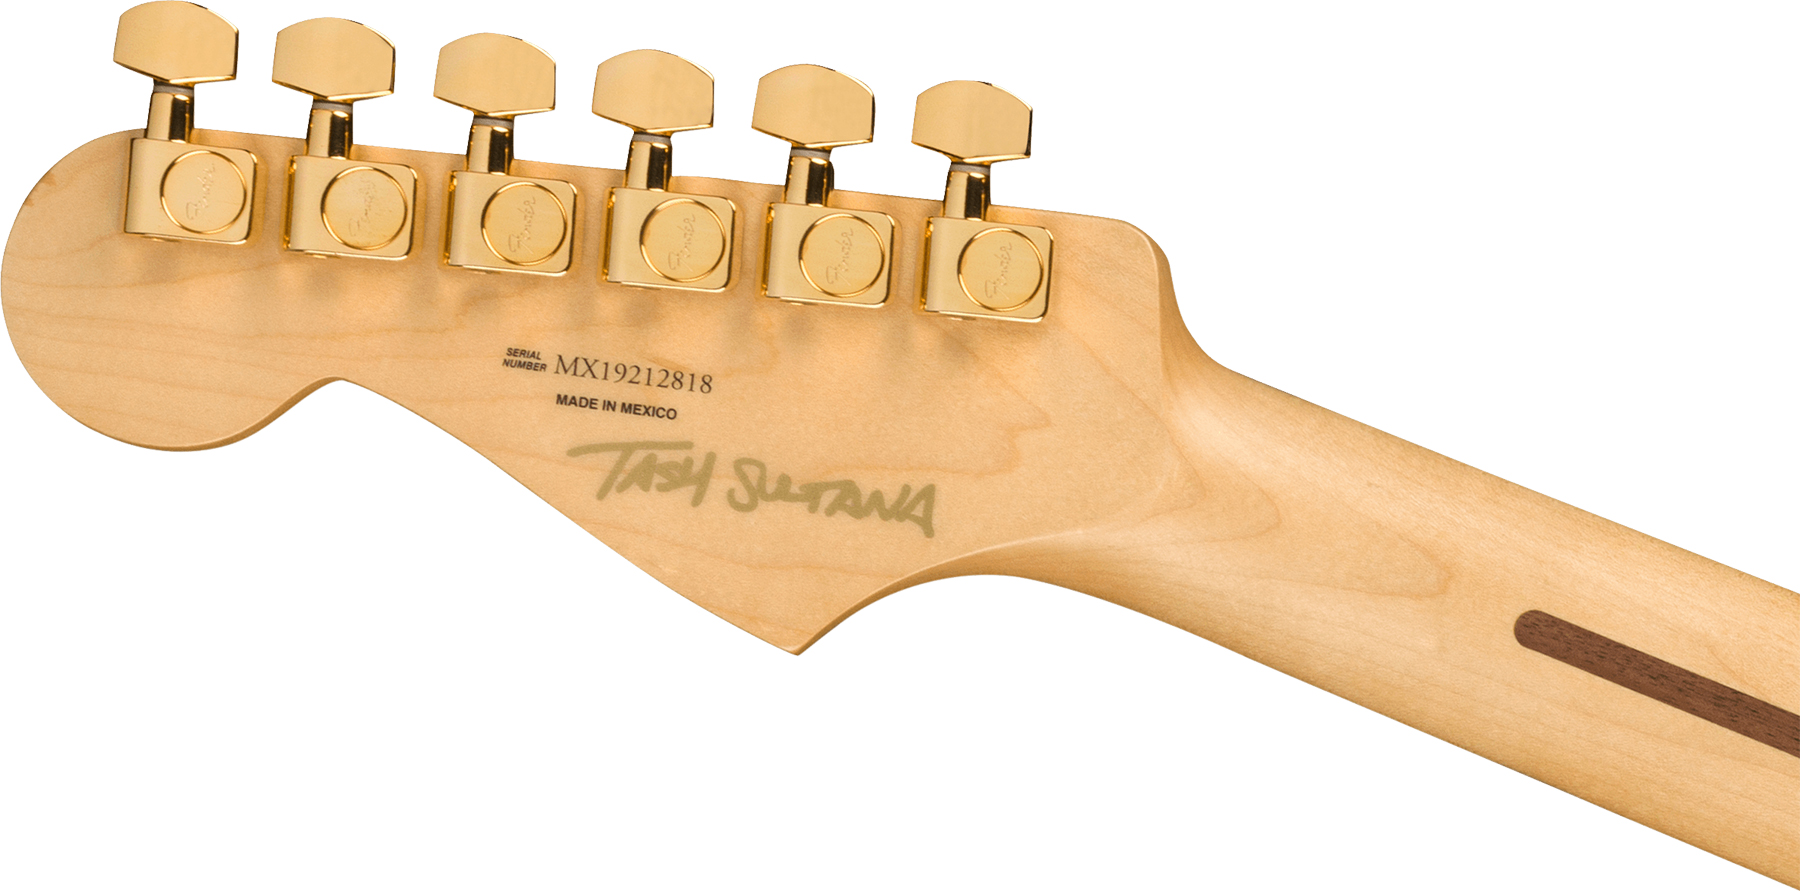 Fender Tash Sultana Strat Signature Mex Hss Mn - Transparent Cherry - Guitare Électrique Forme Str - Variation 3